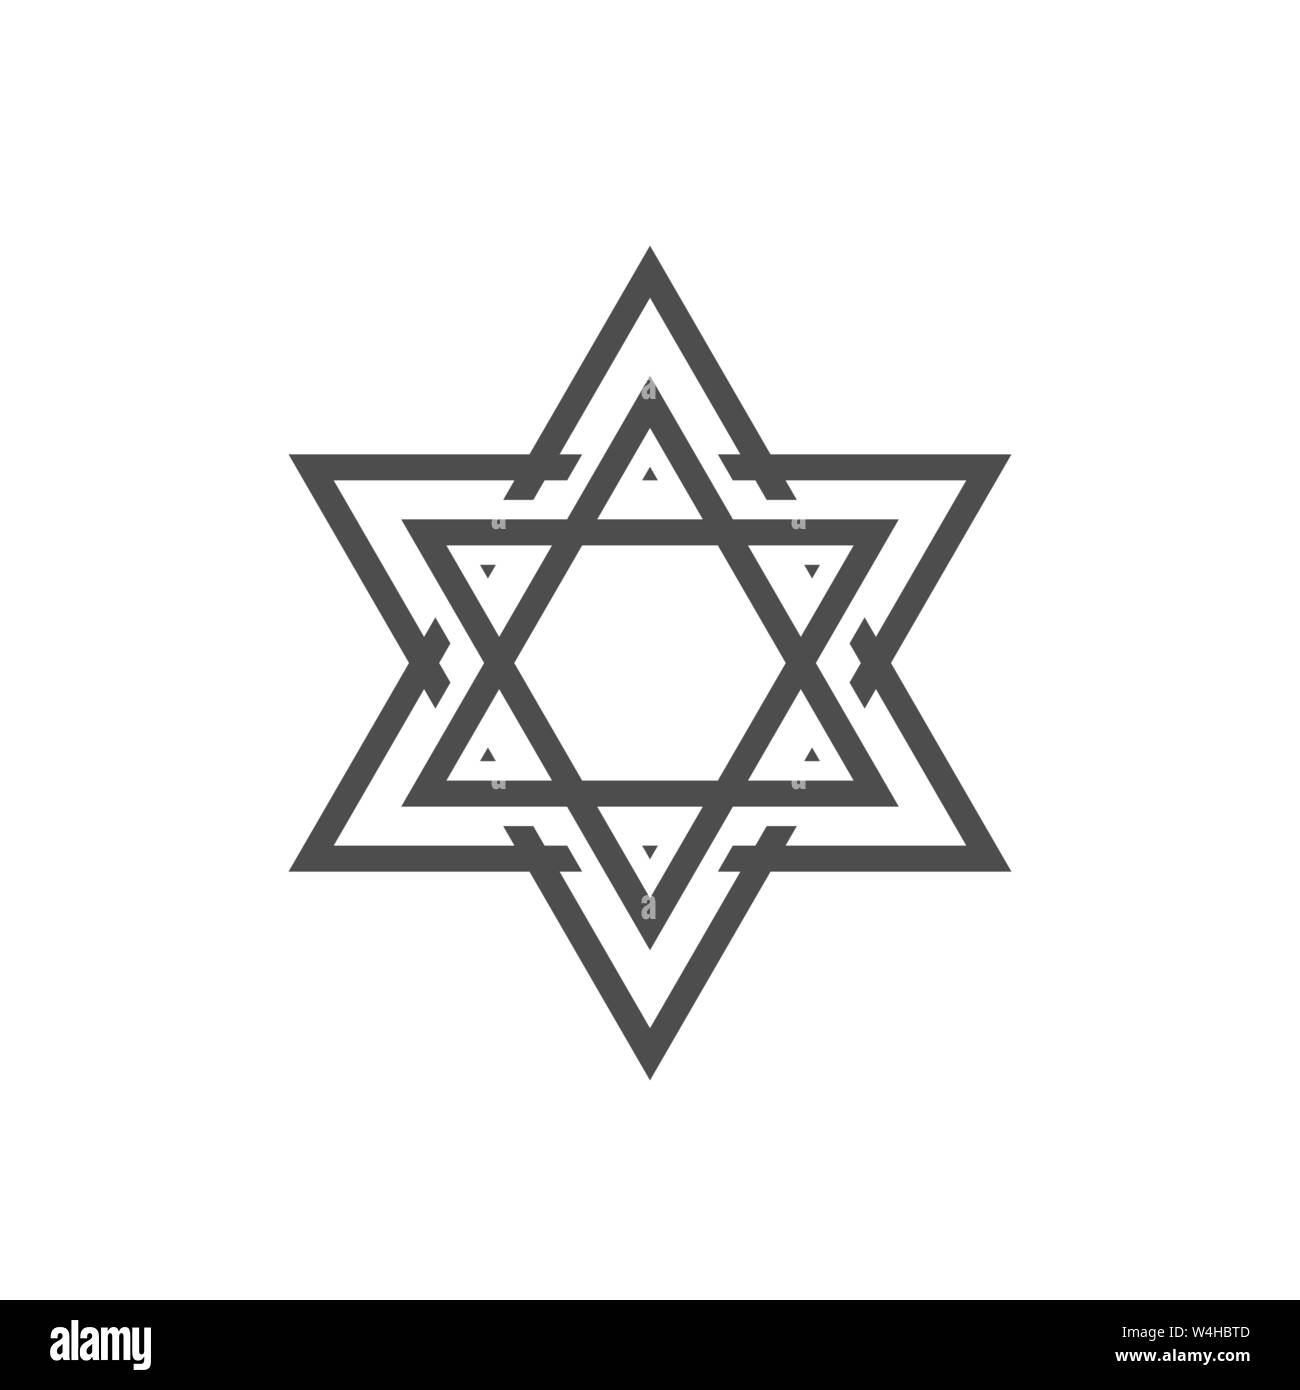 David stern Symbol. Allgemein anerkannten Symbol des modernen jüdischen Identität und Judentum, Israel Symbol Stock Vektor